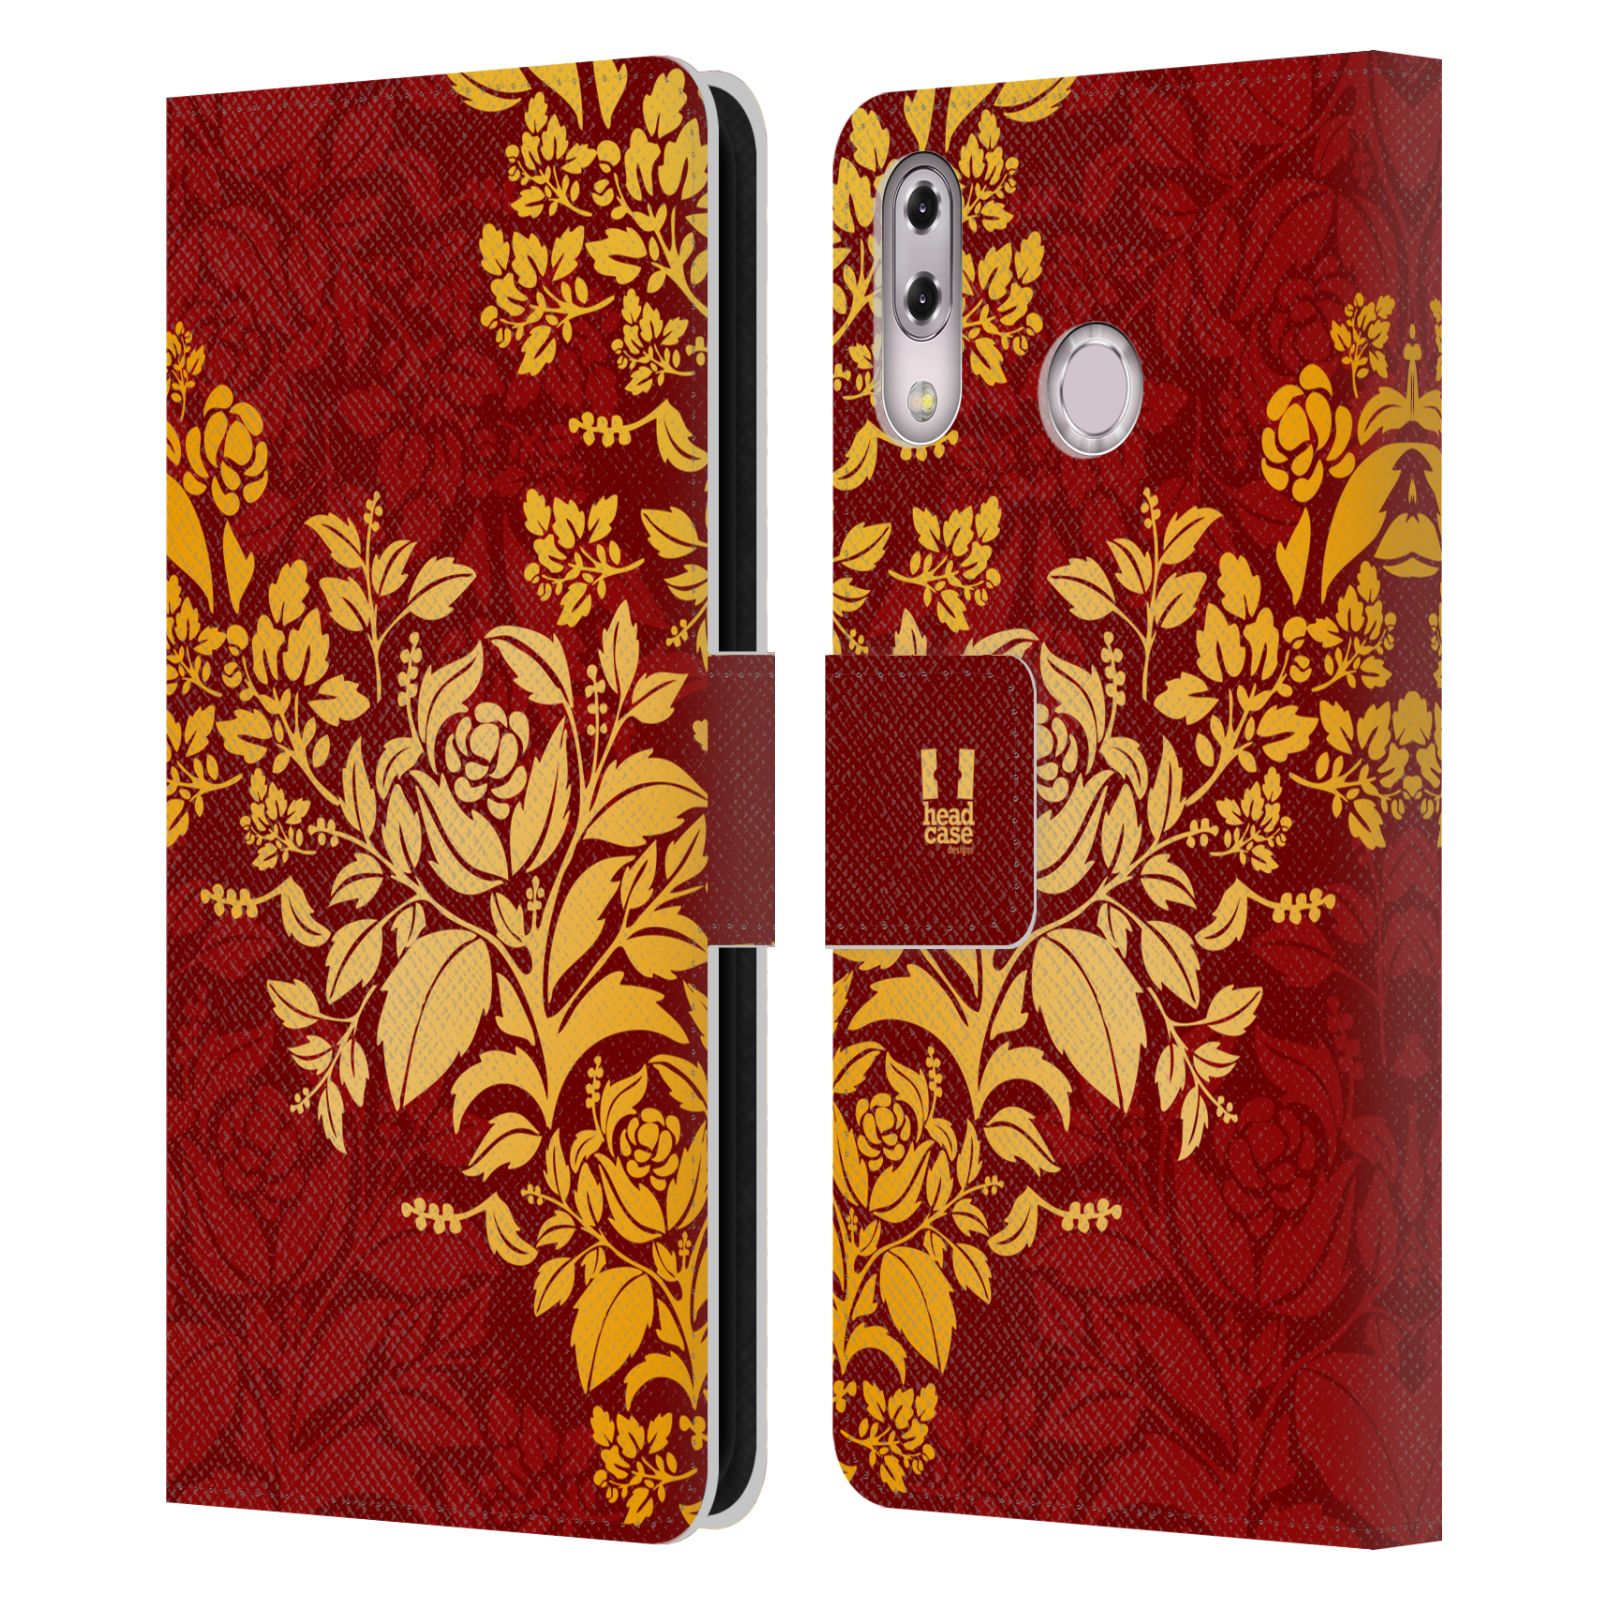 Pouzdro pro mobil Asus Zenfone 5z ZS620KL, 5 ZE620KL  - Moderní rudé baroko květy